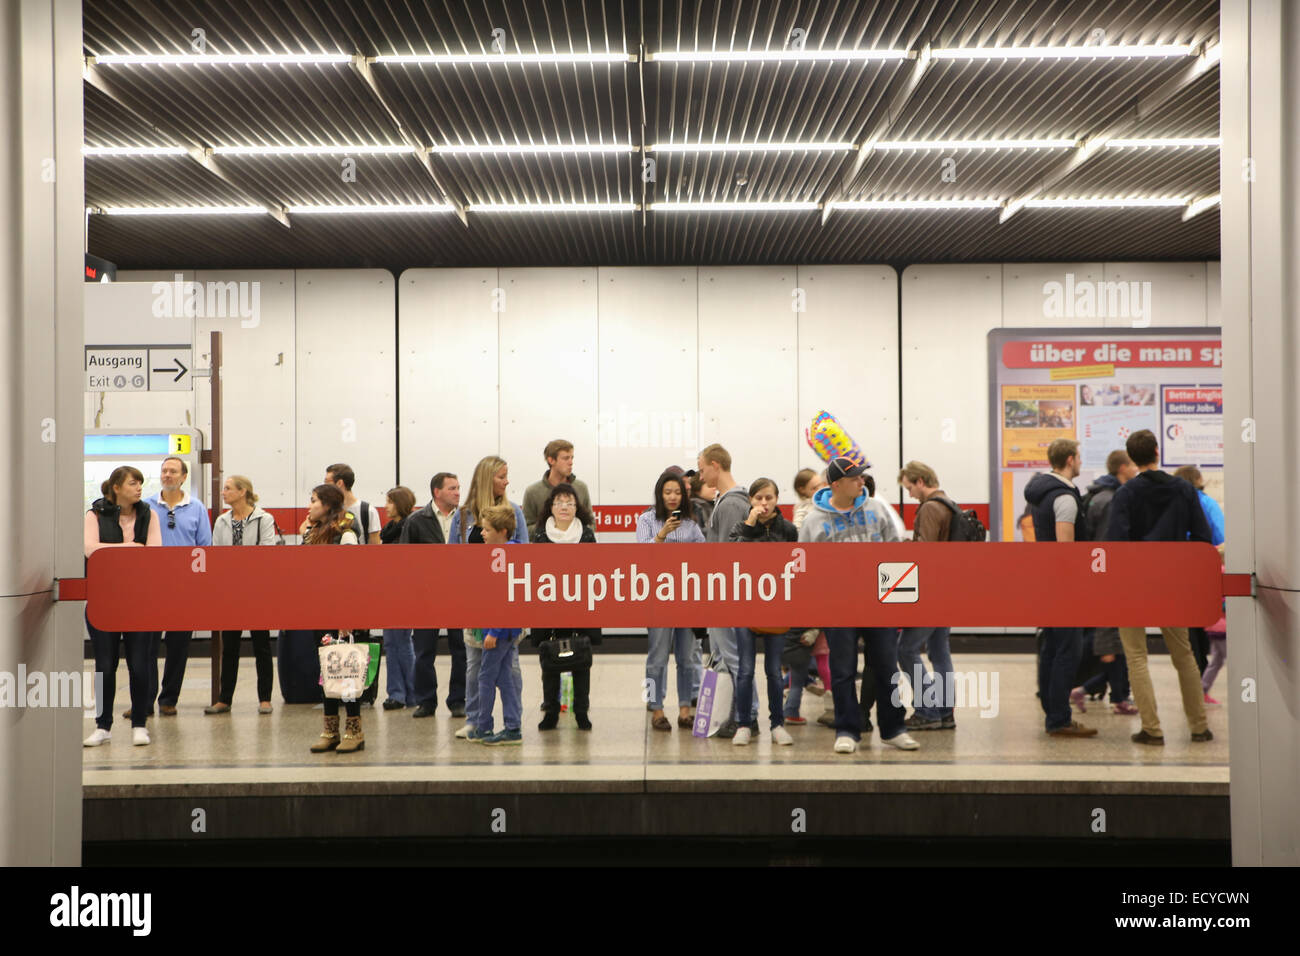 La folla di persone in attesa la metropolitana stazione munich hauptbahnhof stazione centrale Foto Stock